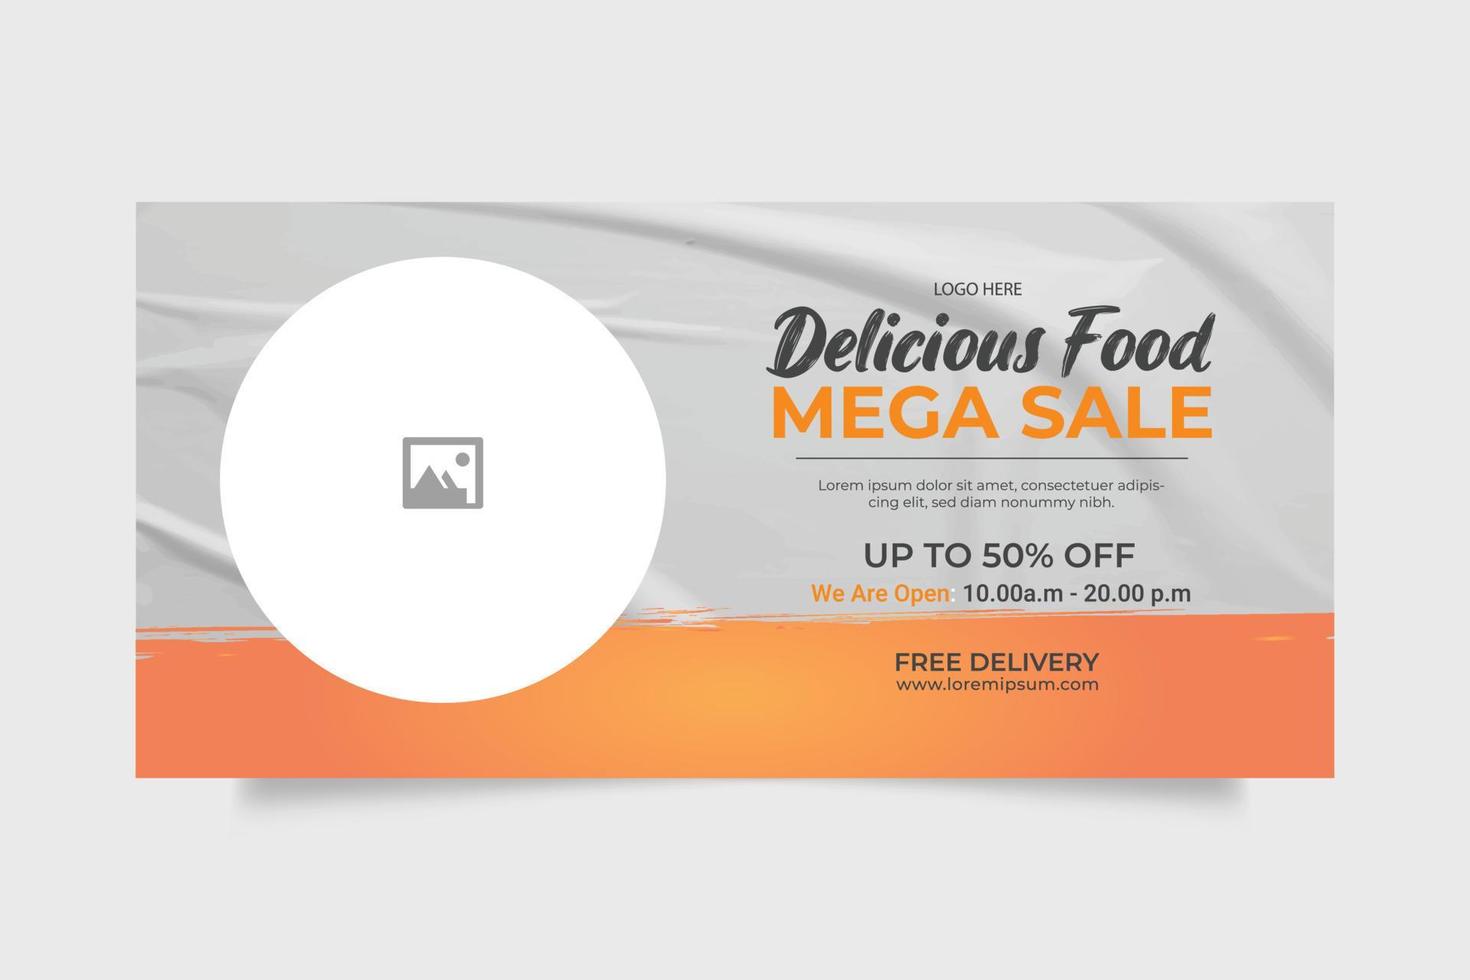 Luxury delicious food menu web banner template design vector